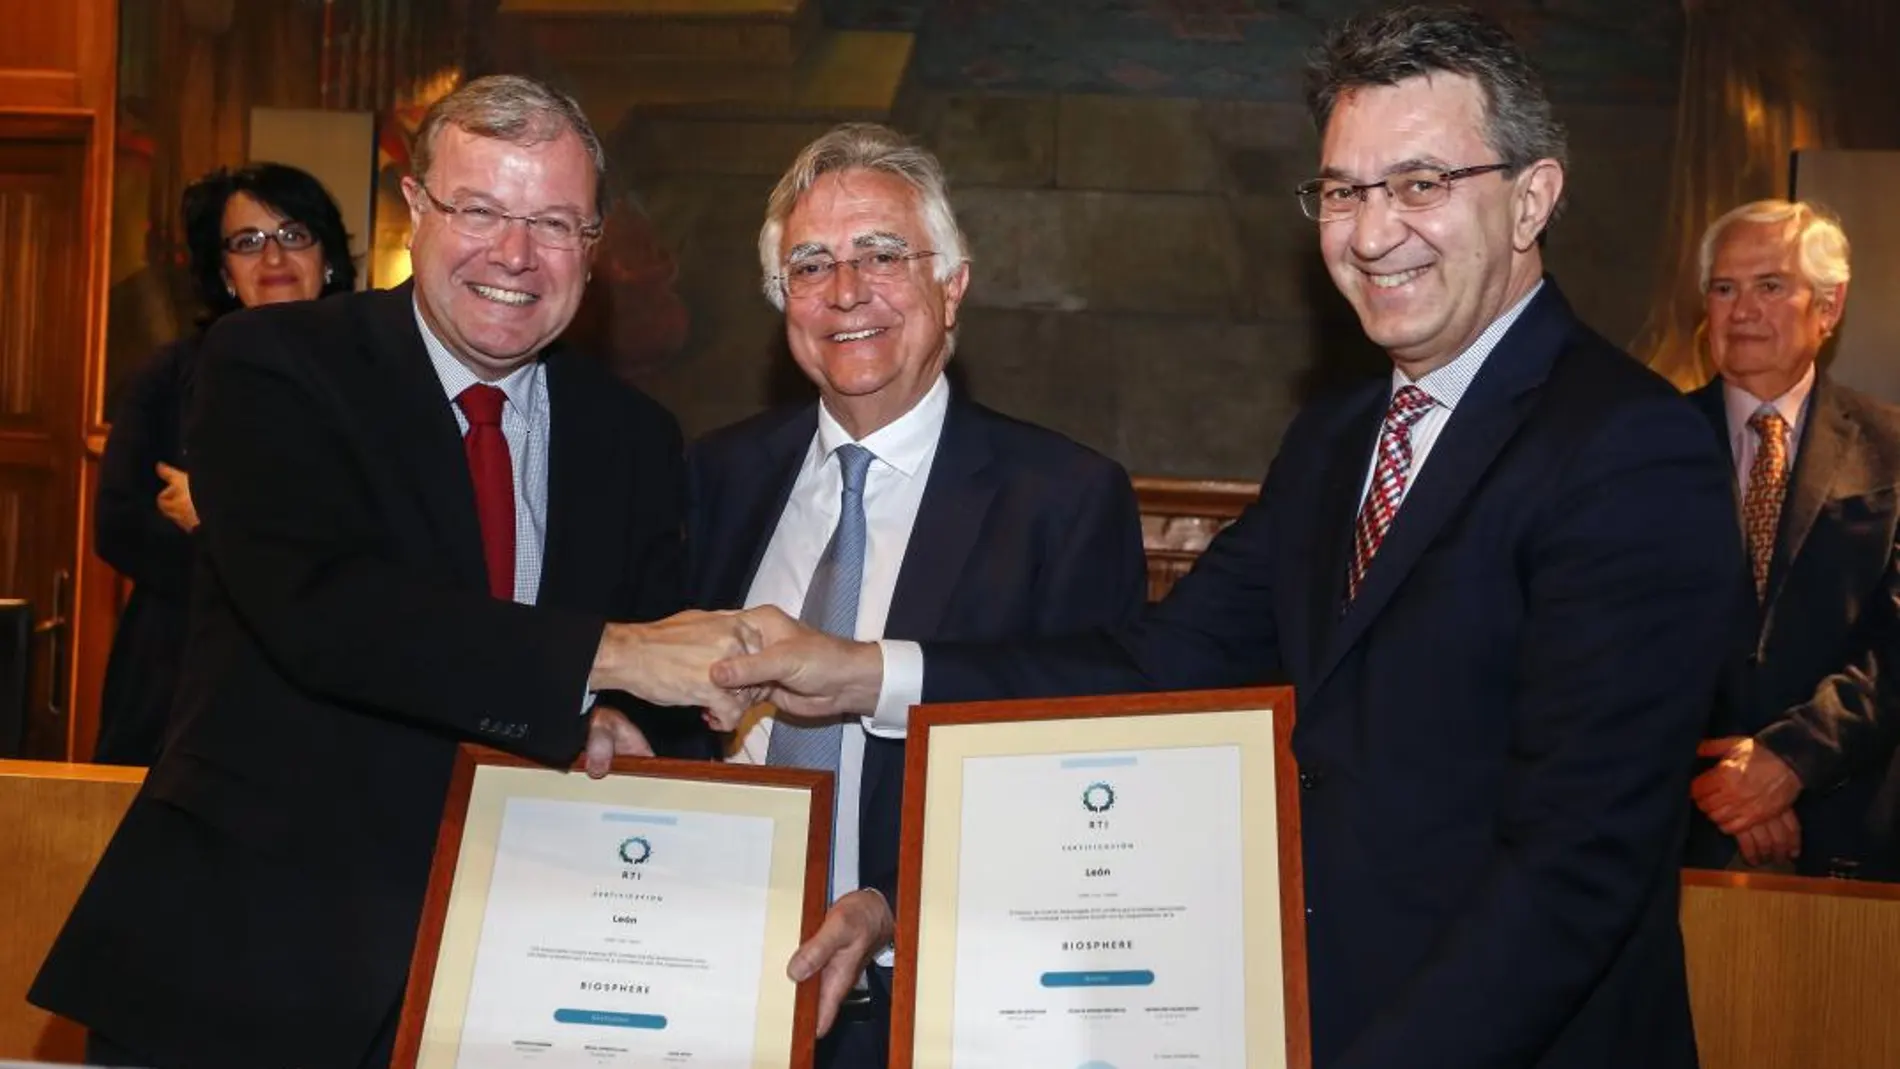 El presidente de la Diputación de León, Juan Martínez Majo, recibe el Certificado «Biosphere Destination» otorgado por la Unesco a la provincia, acompañado por el alcalde Antonio Silván y Tomás de Azcárate